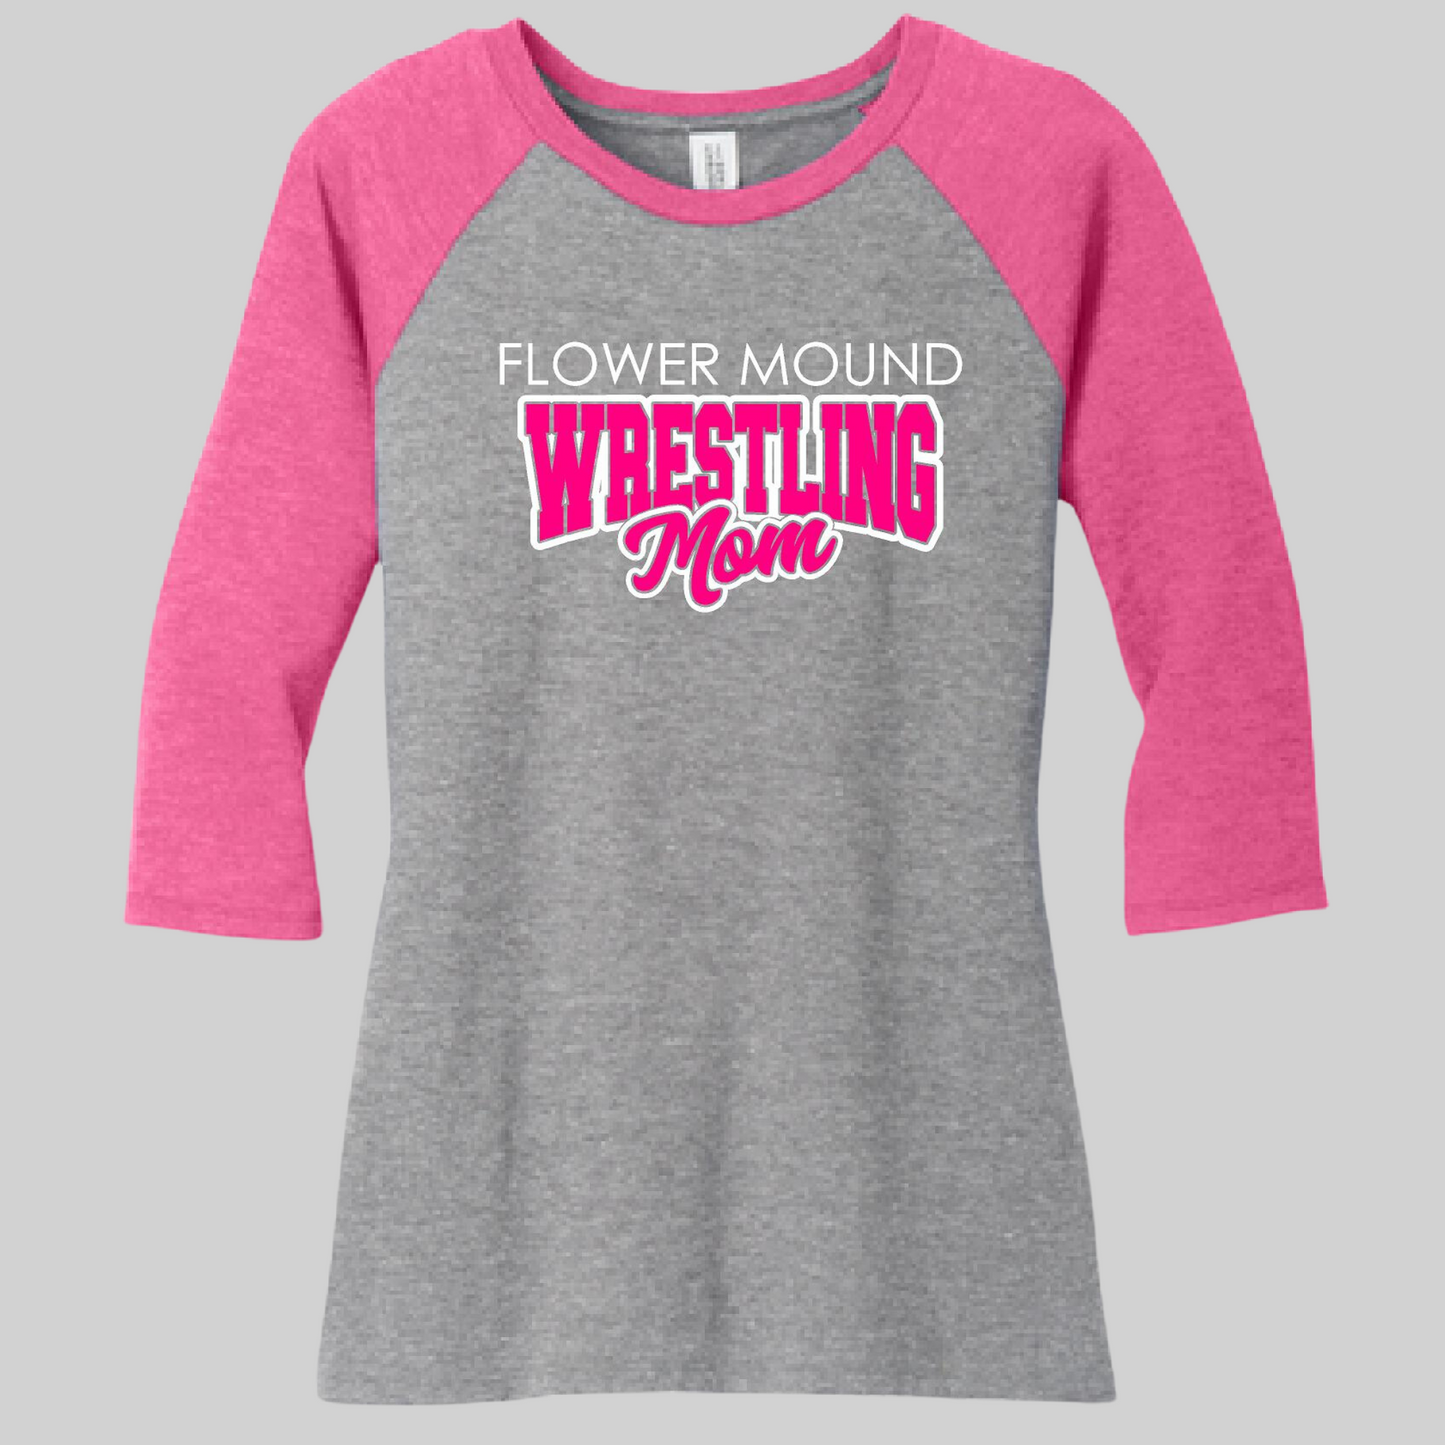 Flower Mound High School Girls Wrestling 23-6